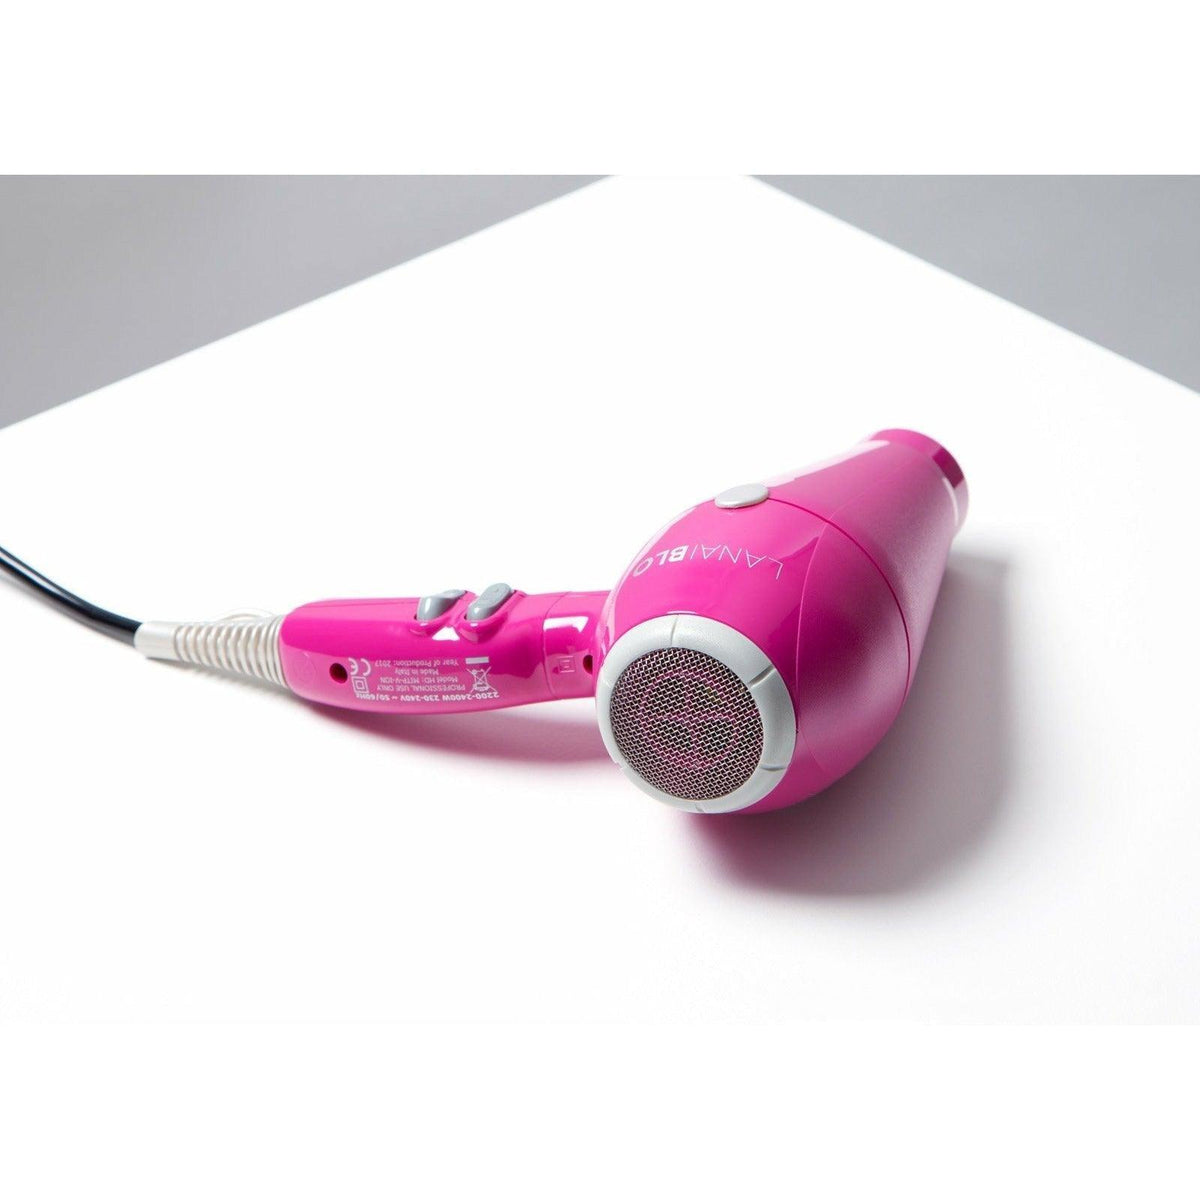 Lanaiblo 2400W Hair Dryer - Pink | LANAIBLOPINK (7216364093628)